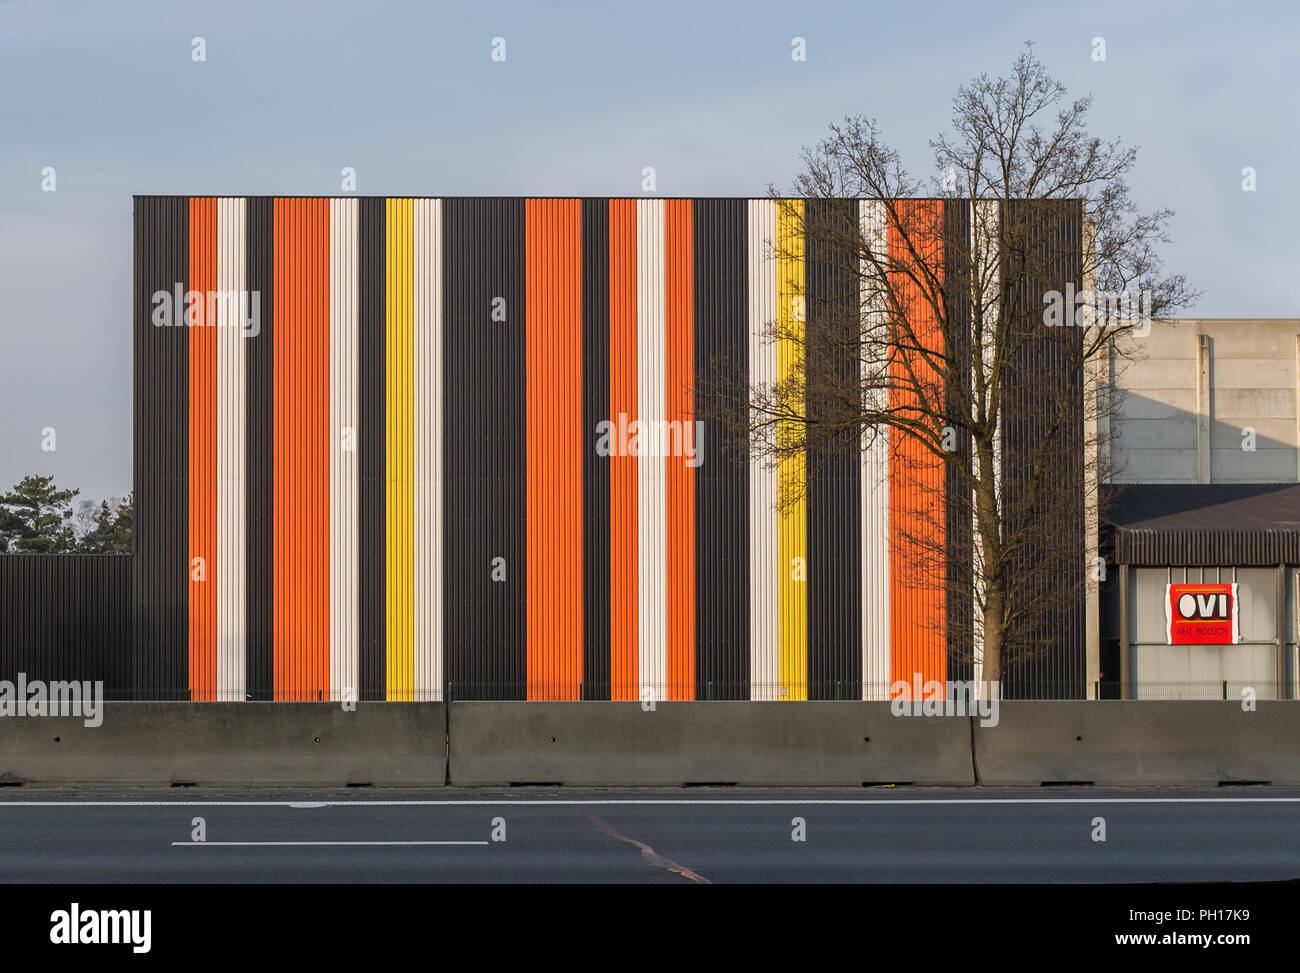 La figura mostra il magazzino del Olense Vleeswaren Industrie (OVI) lungo l'autostrada E313, lunedì 16 marzo 2015, Olen, Belgio. Foto Stock